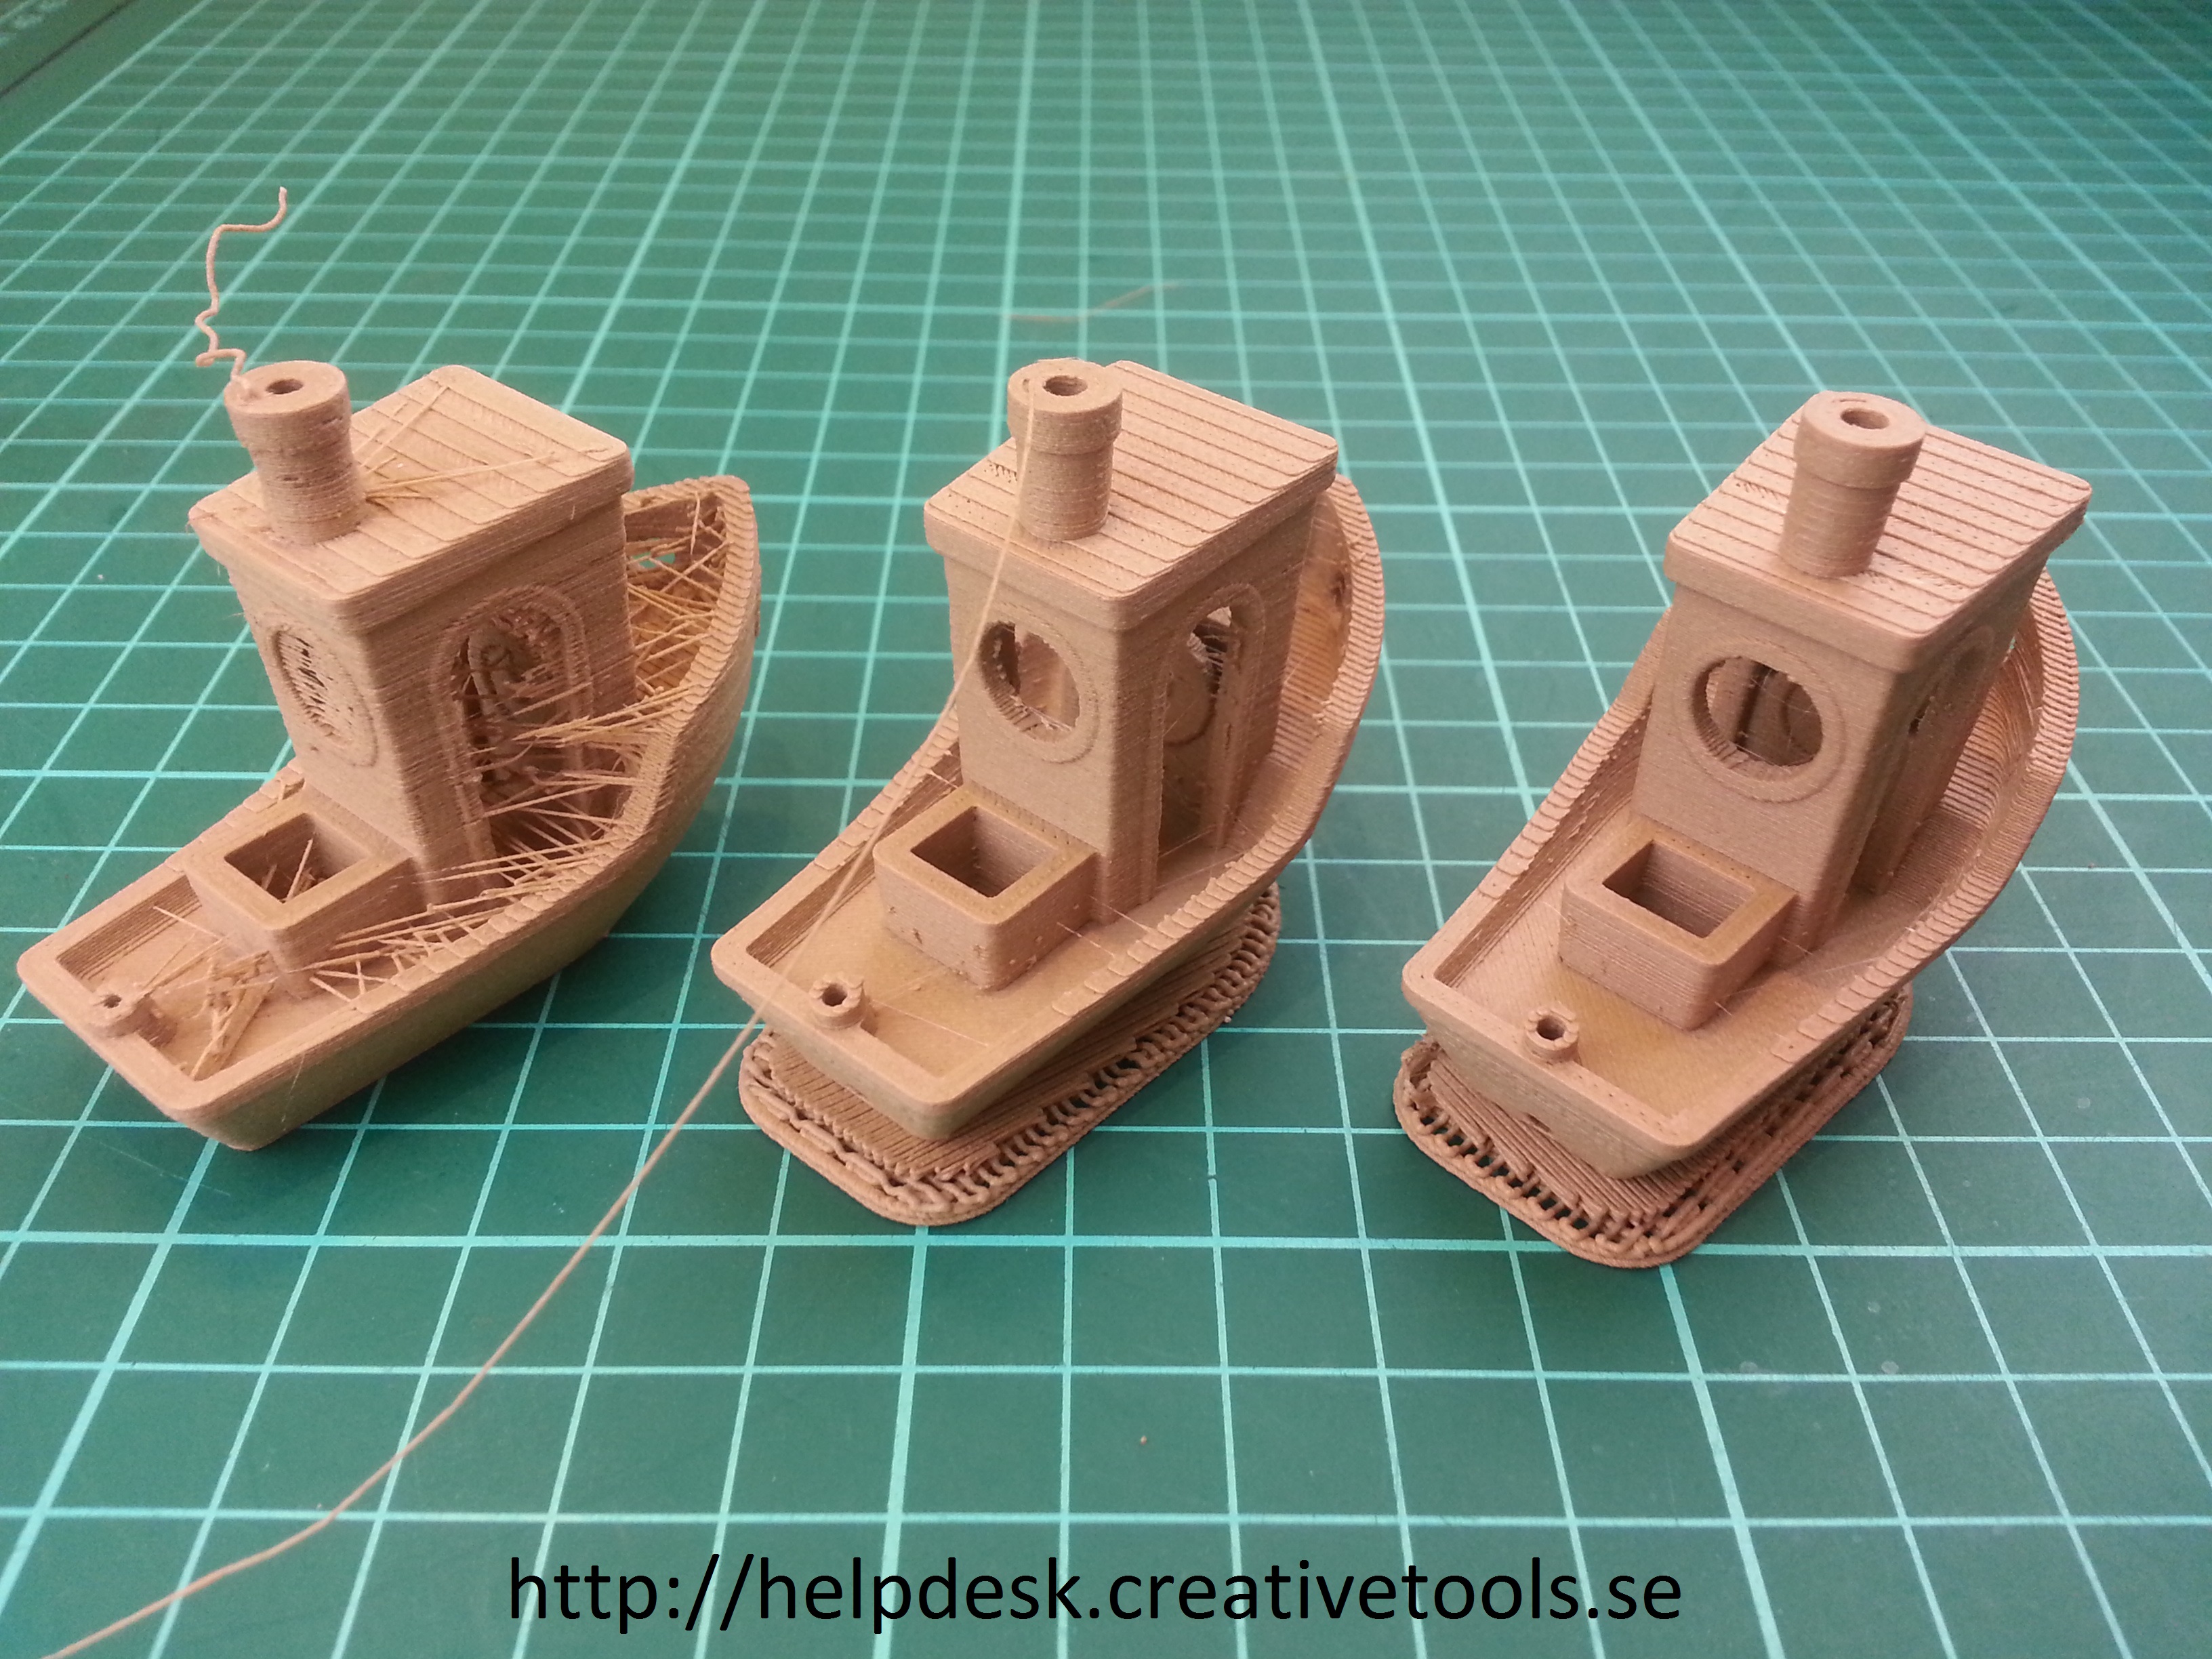 three 3D printed boats